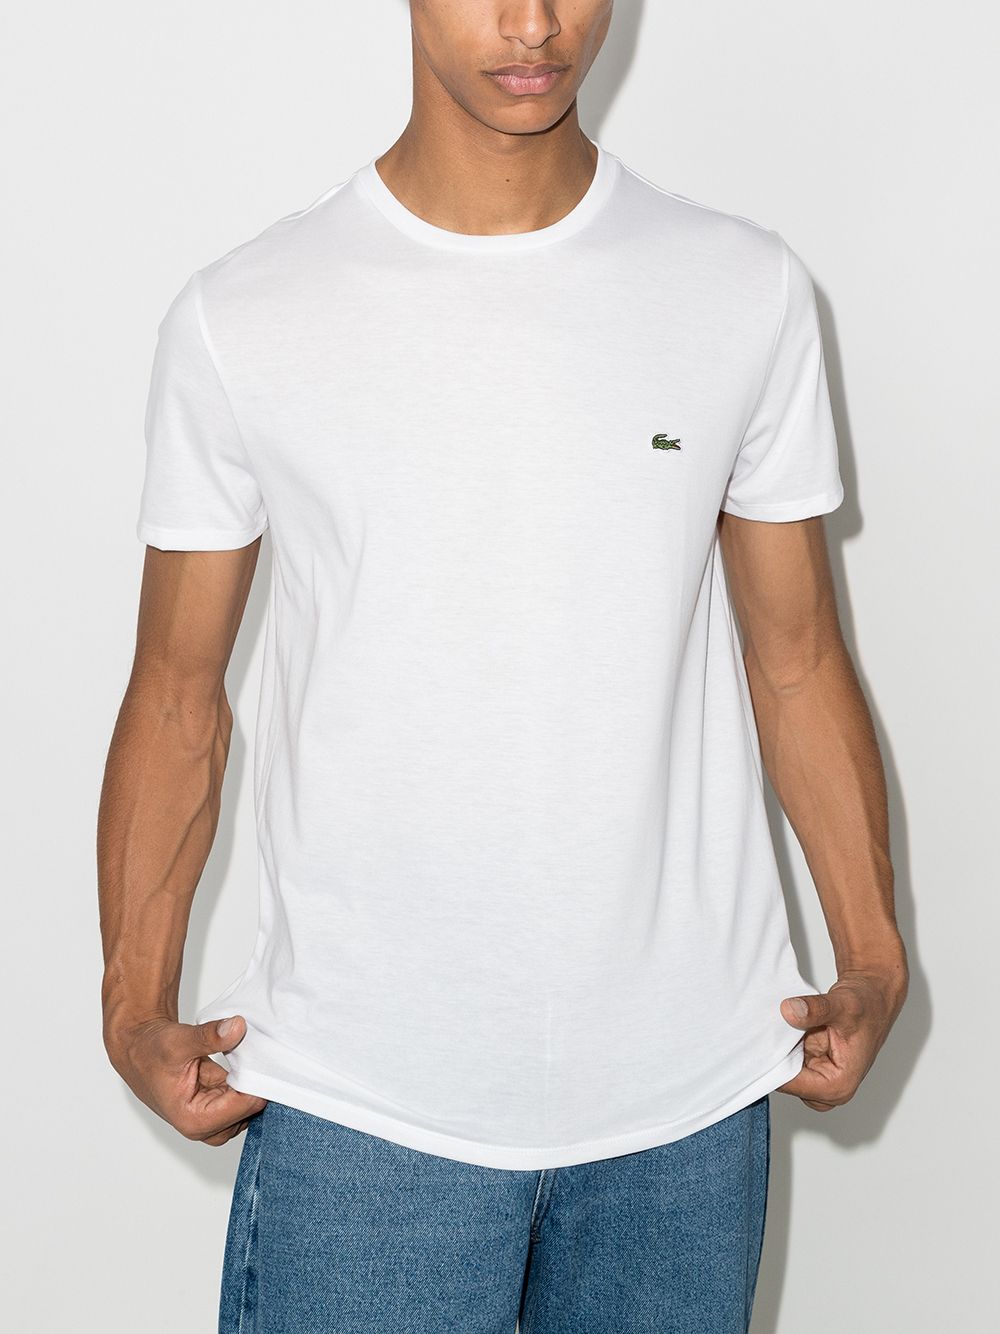 White cotton logo-patch cotton T-shirt